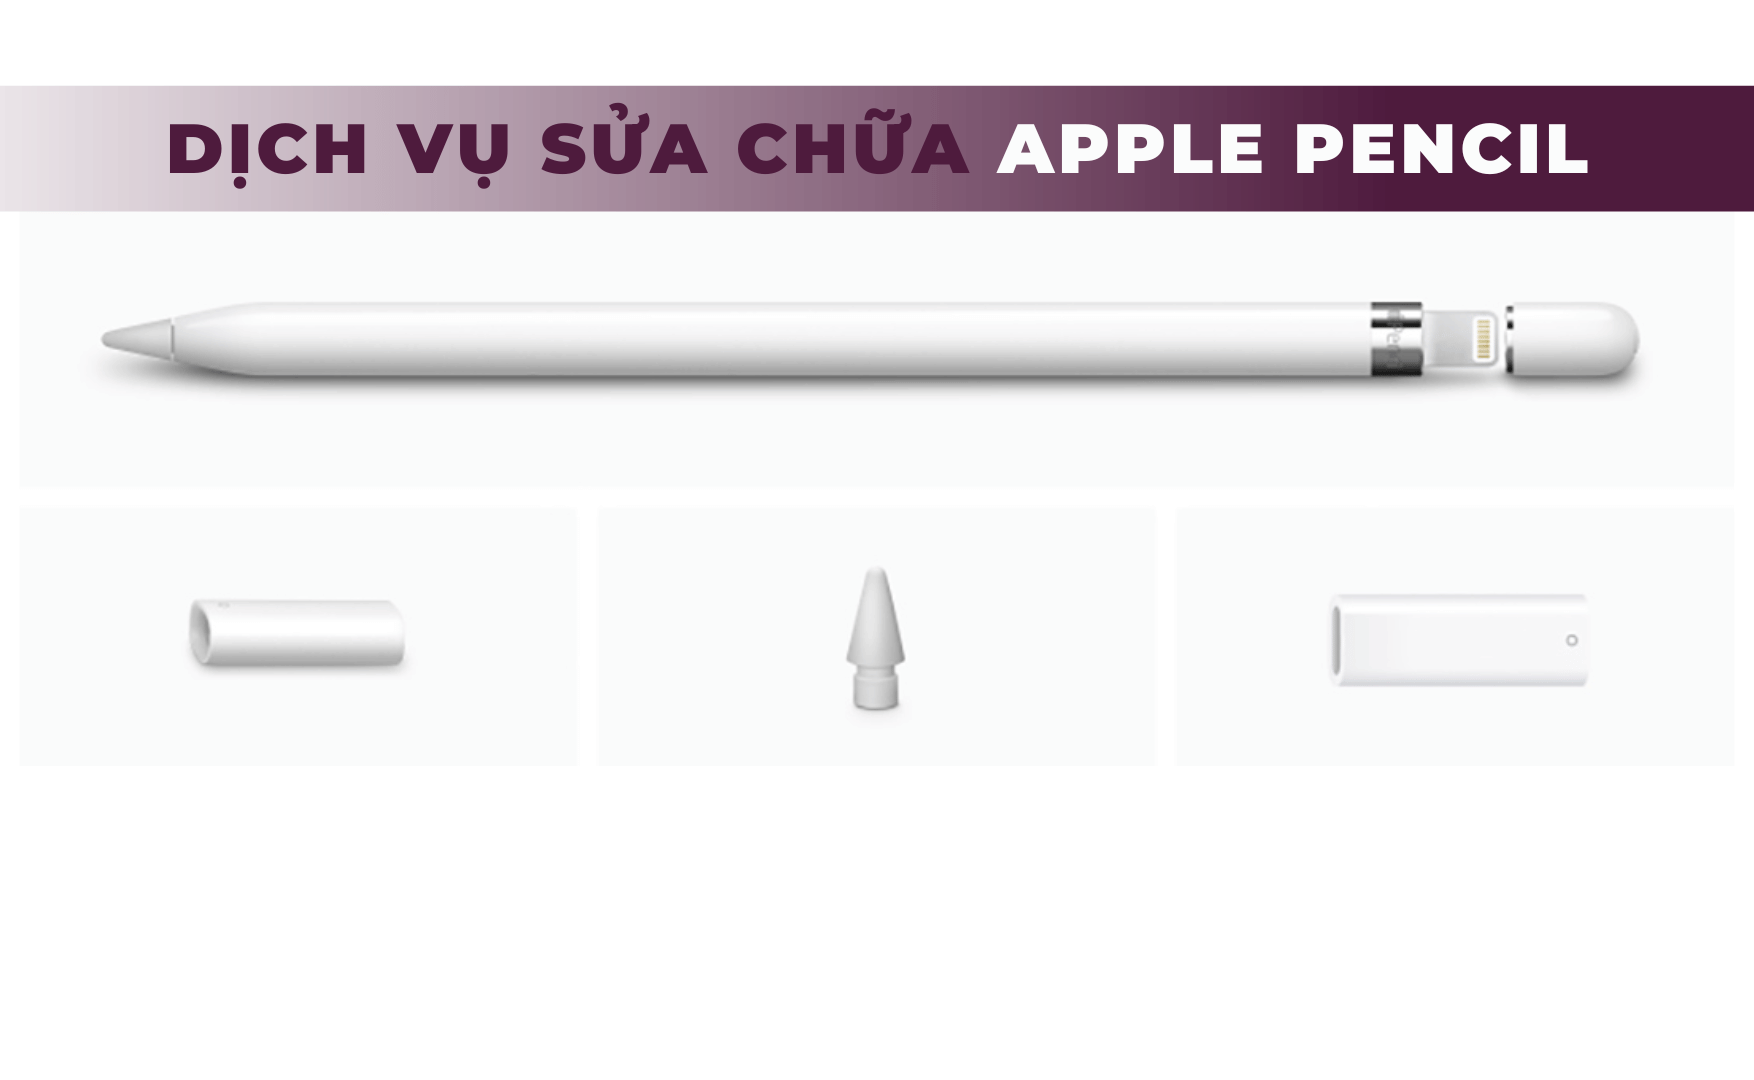 Sửa Apple Pencil chuyên nghiệp | Giải pháp cho những vấn đề về Apple Pencil của bạn